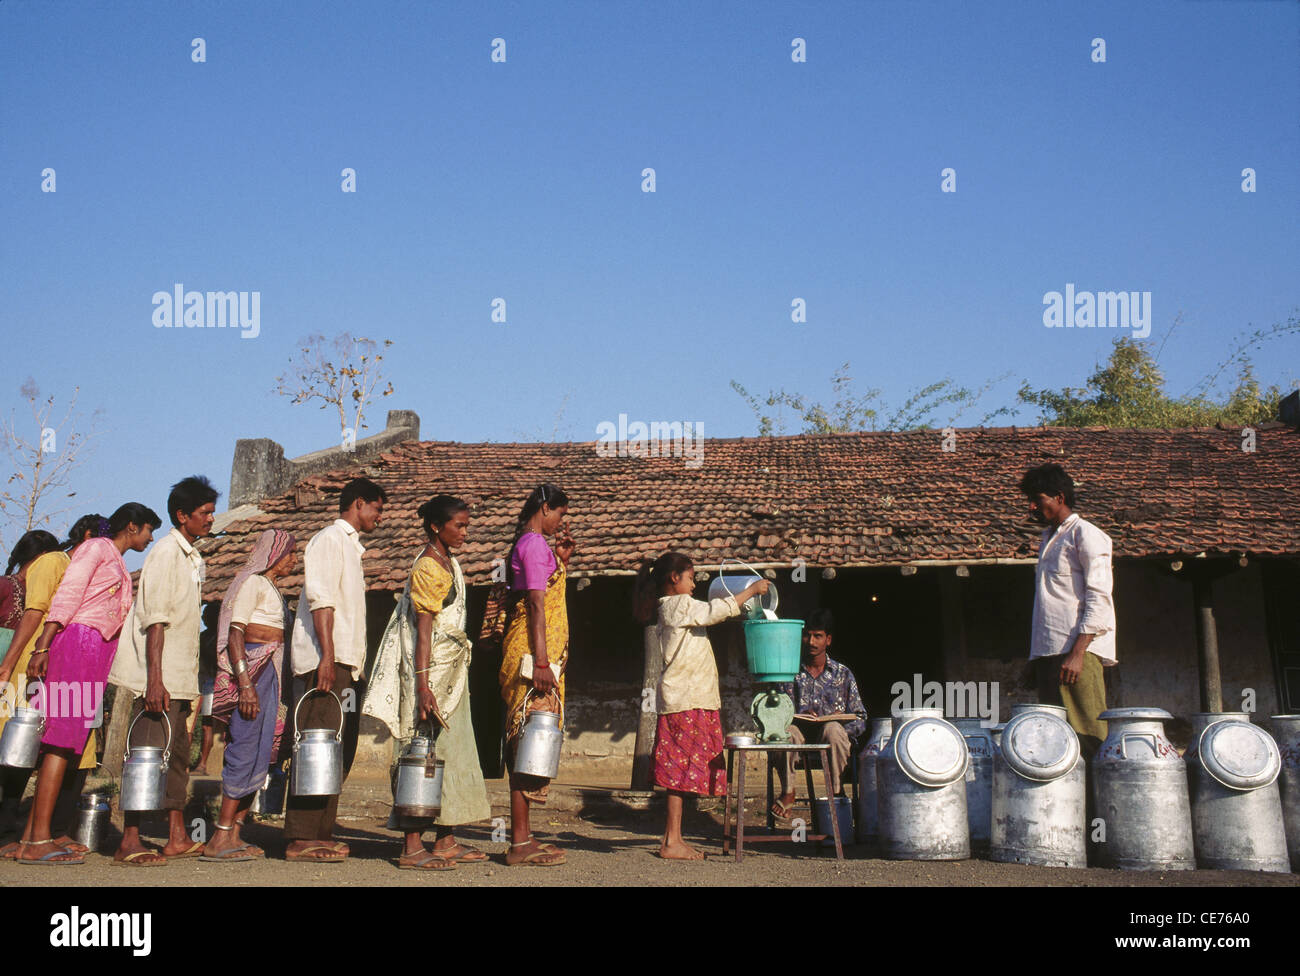 Faire la queue au centre de collecte de lait coopérative de lait dans le village du Gujarat Inde Asie Banque D'Images